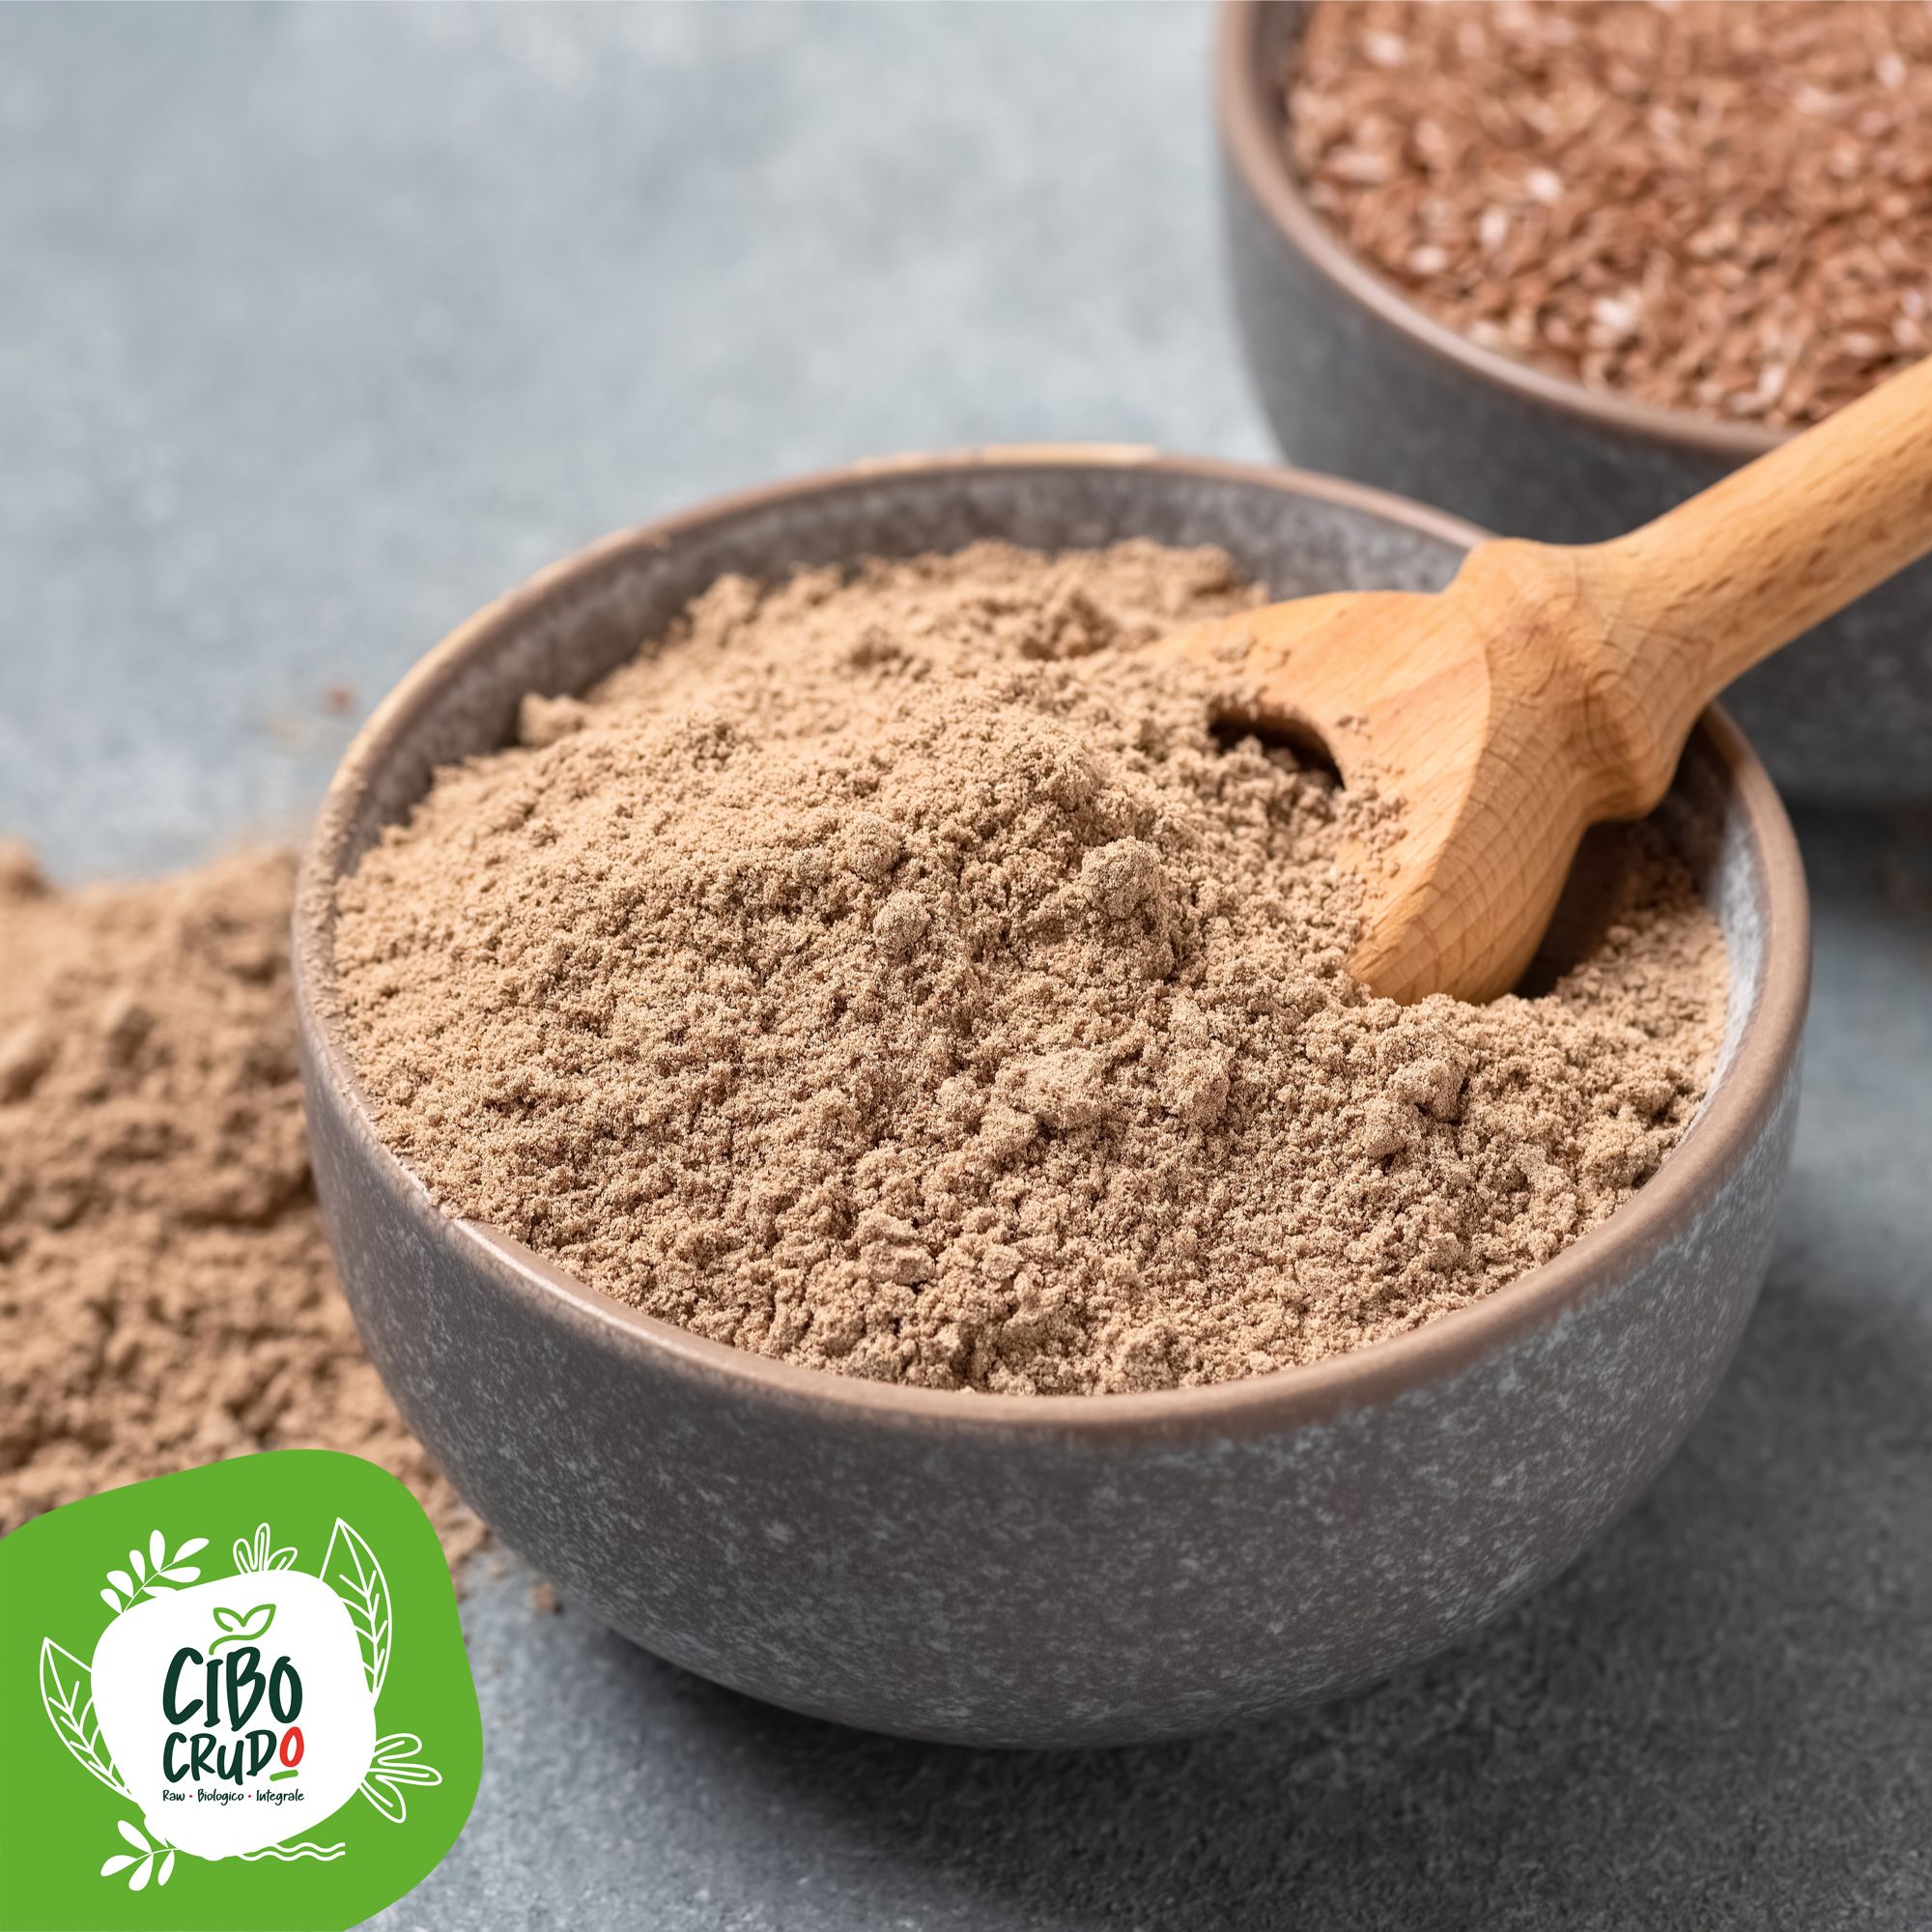 Farina di semi di lino: proprietà, come usarla e ricette - Gambero Rosso